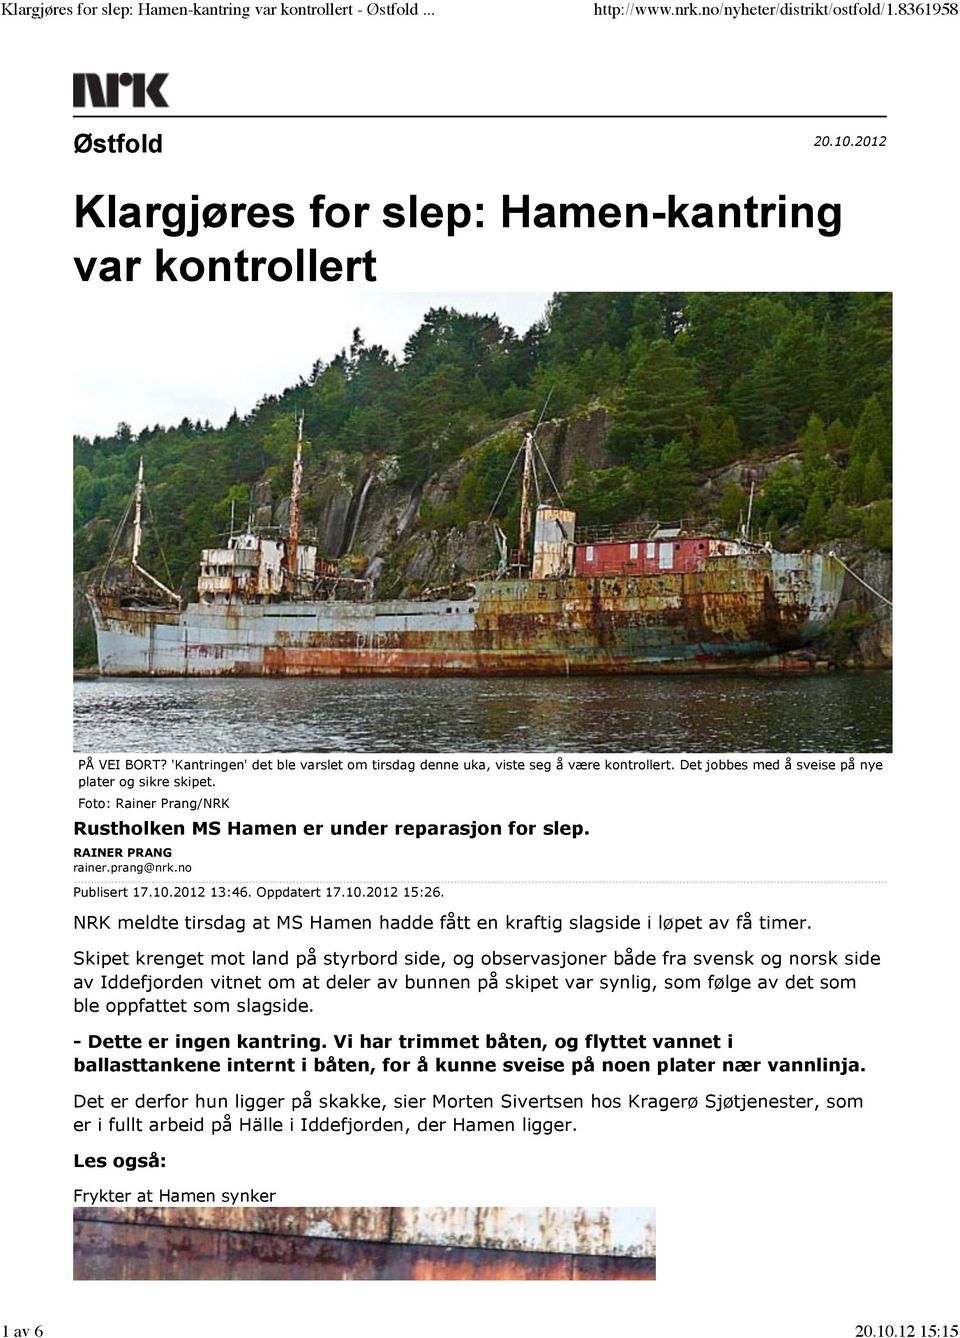 NRK meldte tirsdag at MS Hamen hadde fått en kraftig slagside i løpet av få timer.